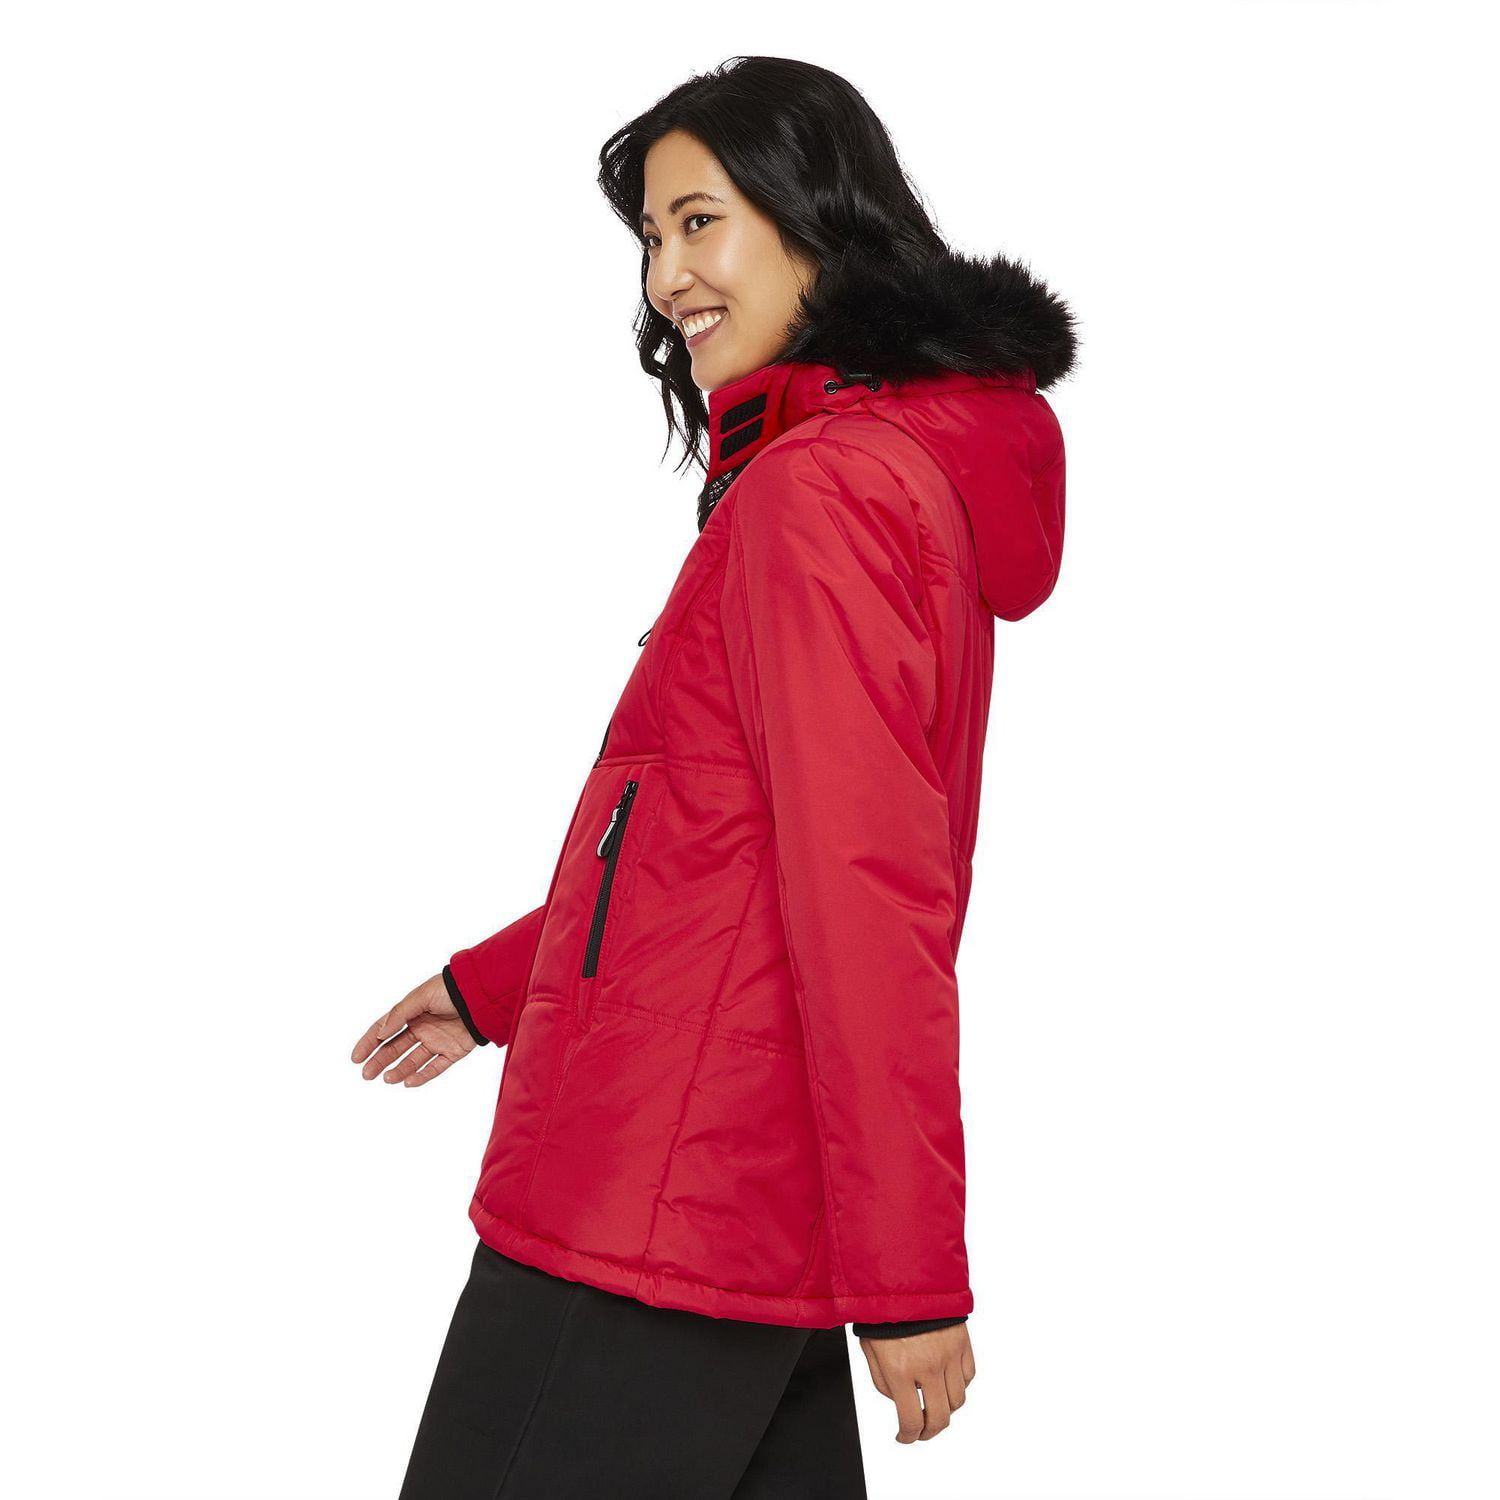 Port Authority ® Ladies Value Fleece Jacket. L217 M Iron Grey